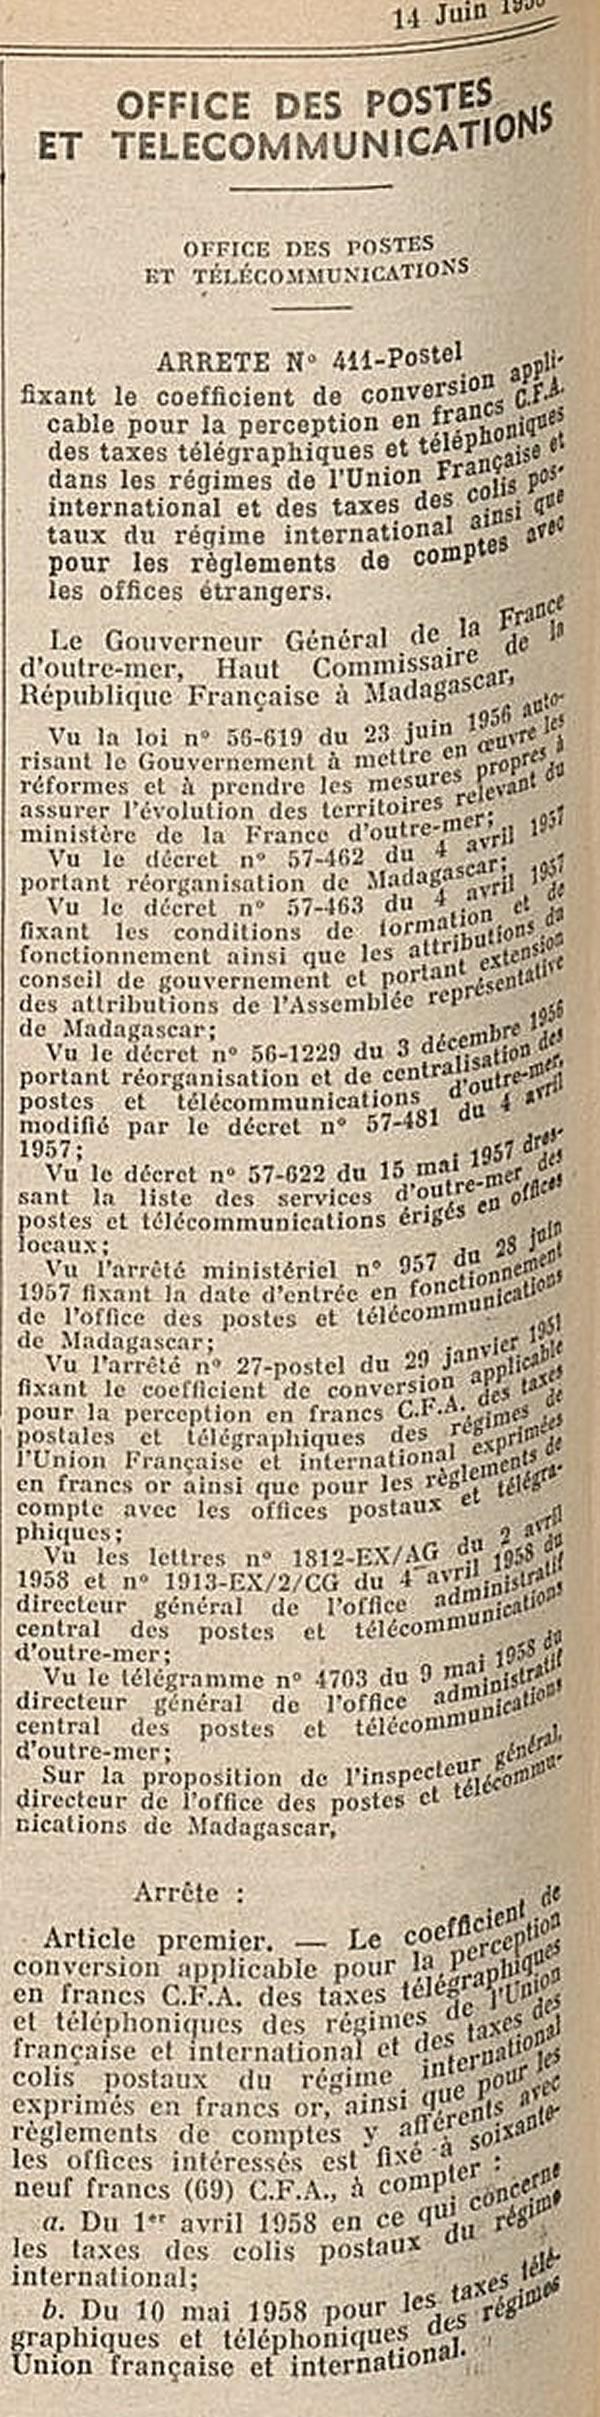 Conversion francs or francs CFA 1958